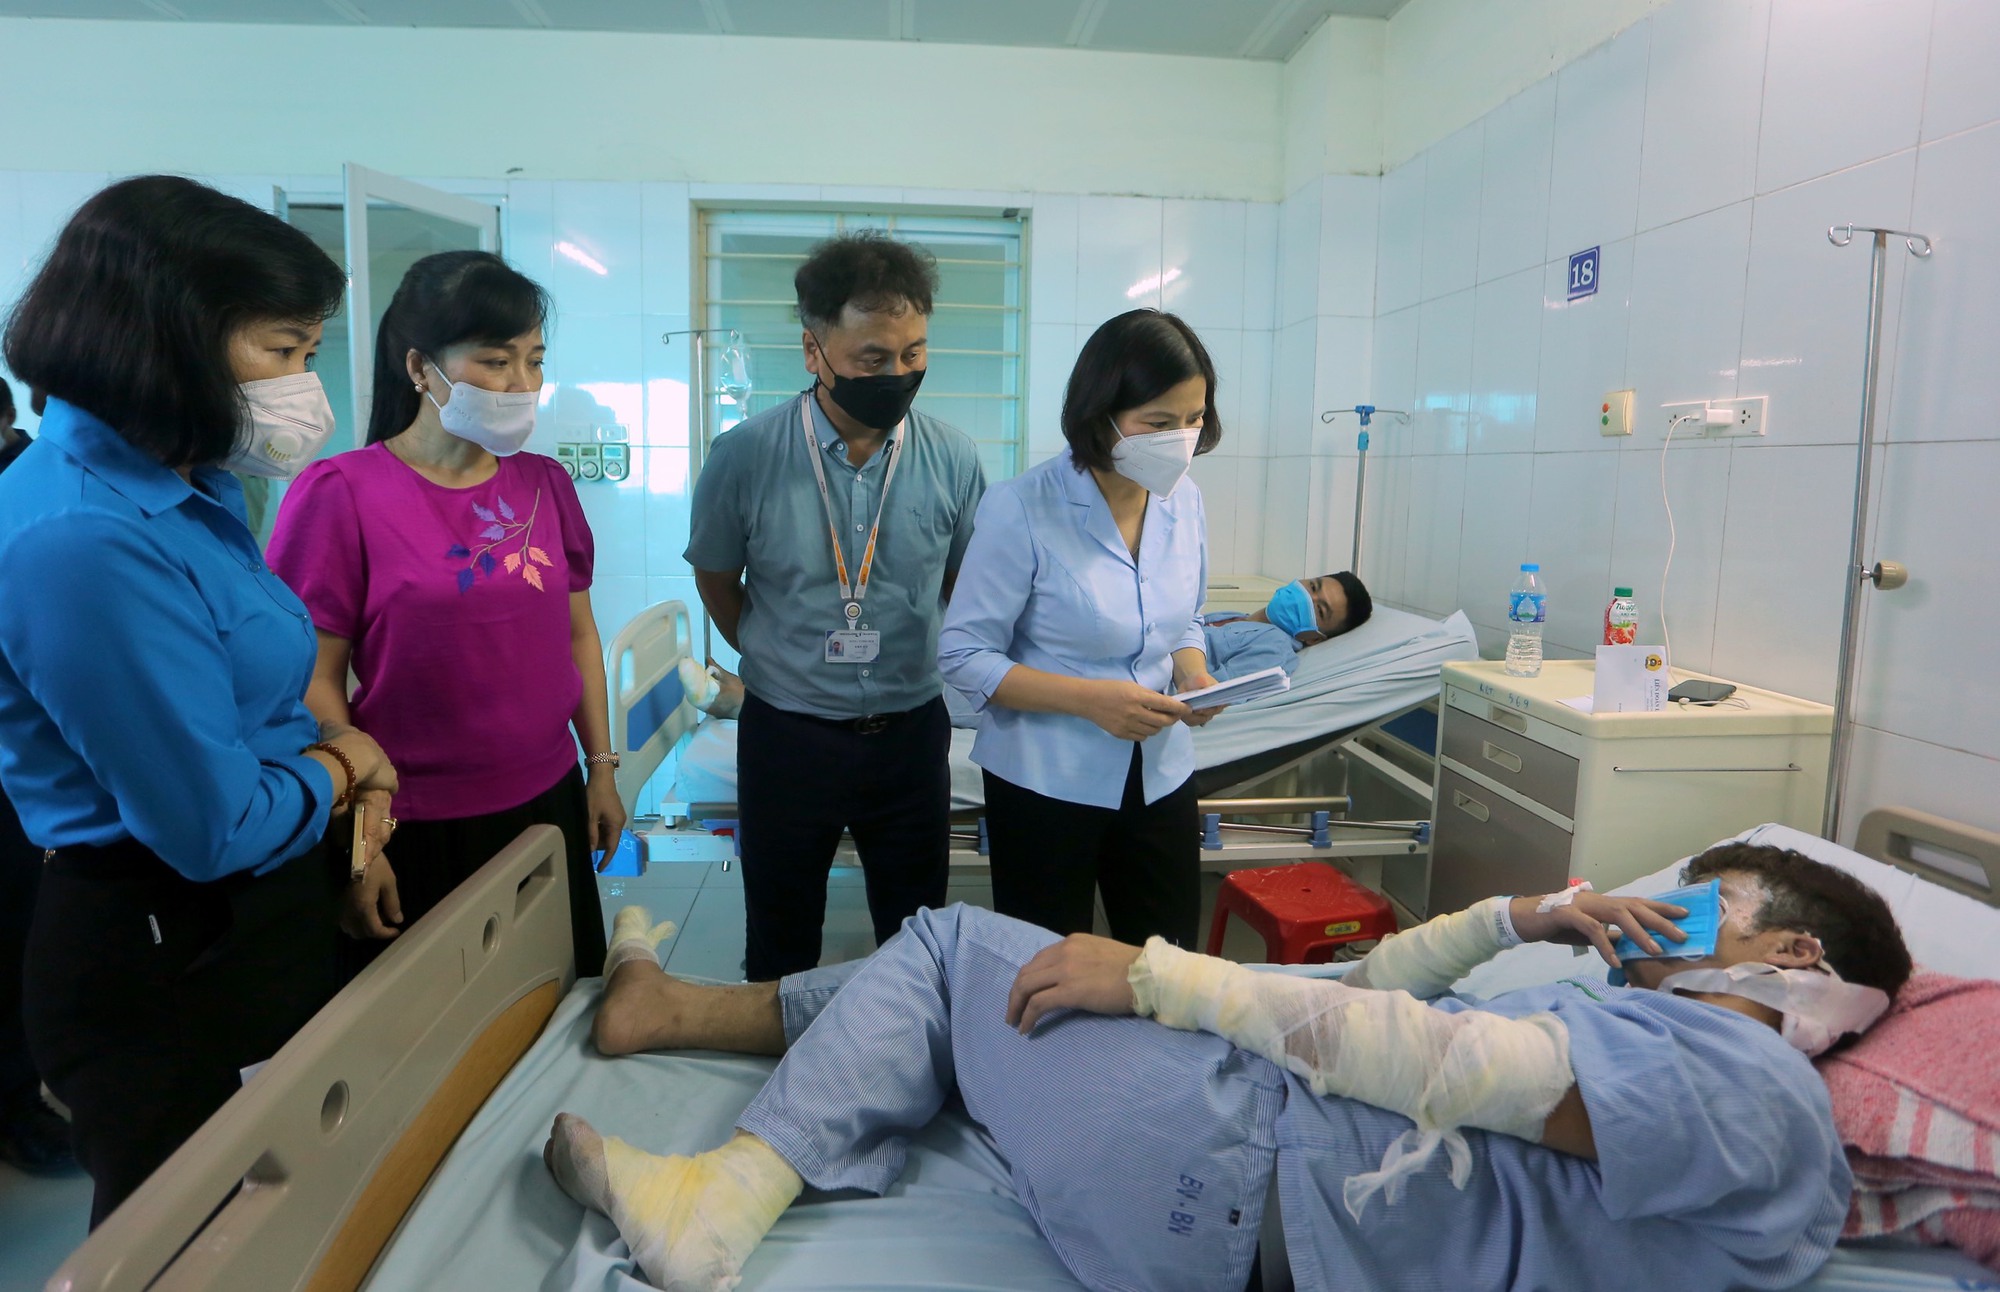 Vụ nổ đường ống khí ở Bắc Ninh: Công nhân kể giây phút bị vật &quot;bắn&quot; vào người đau rát, hoảng loạn tìm lối ra - Ảnh 4.